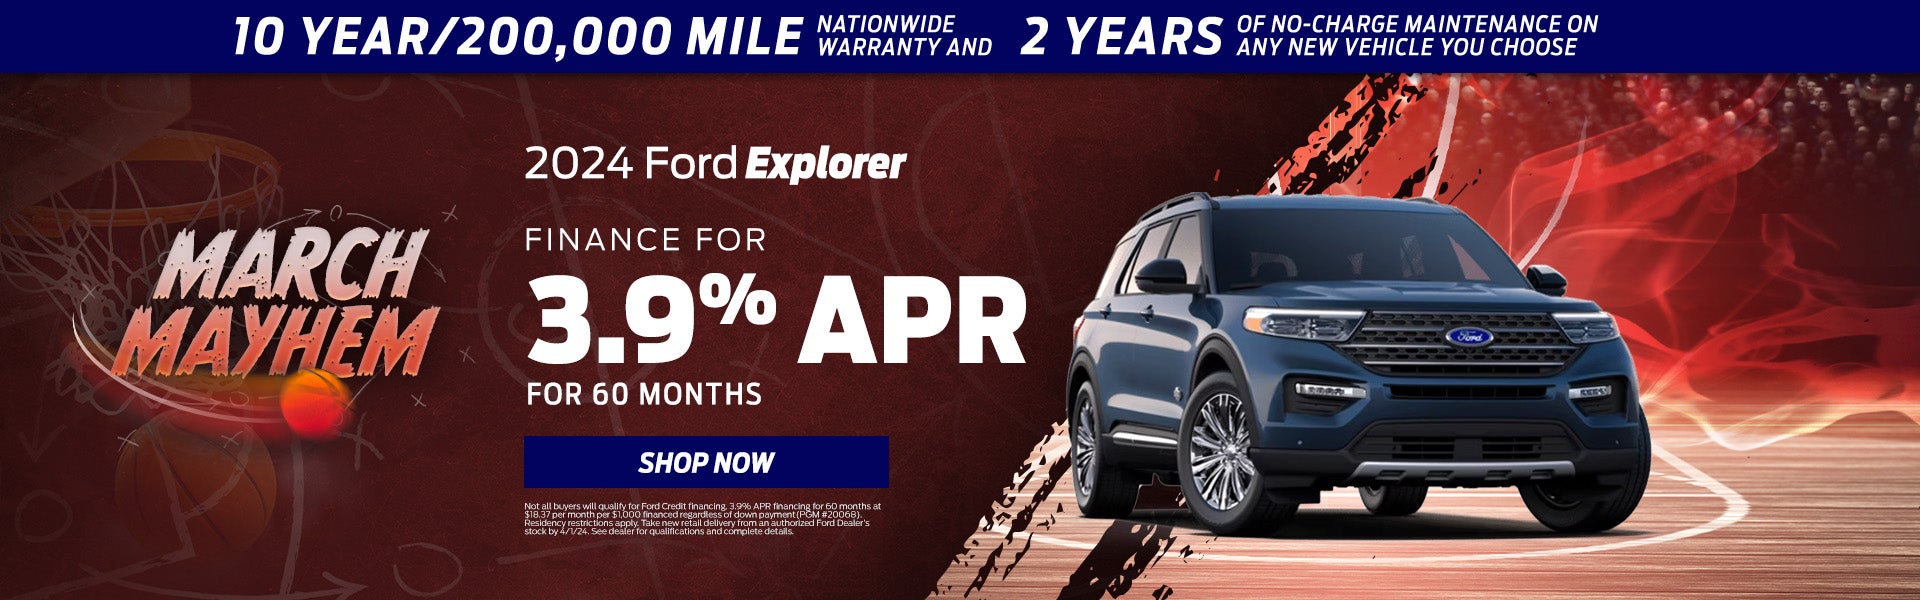 2024 Ford Explorer Finance Offer